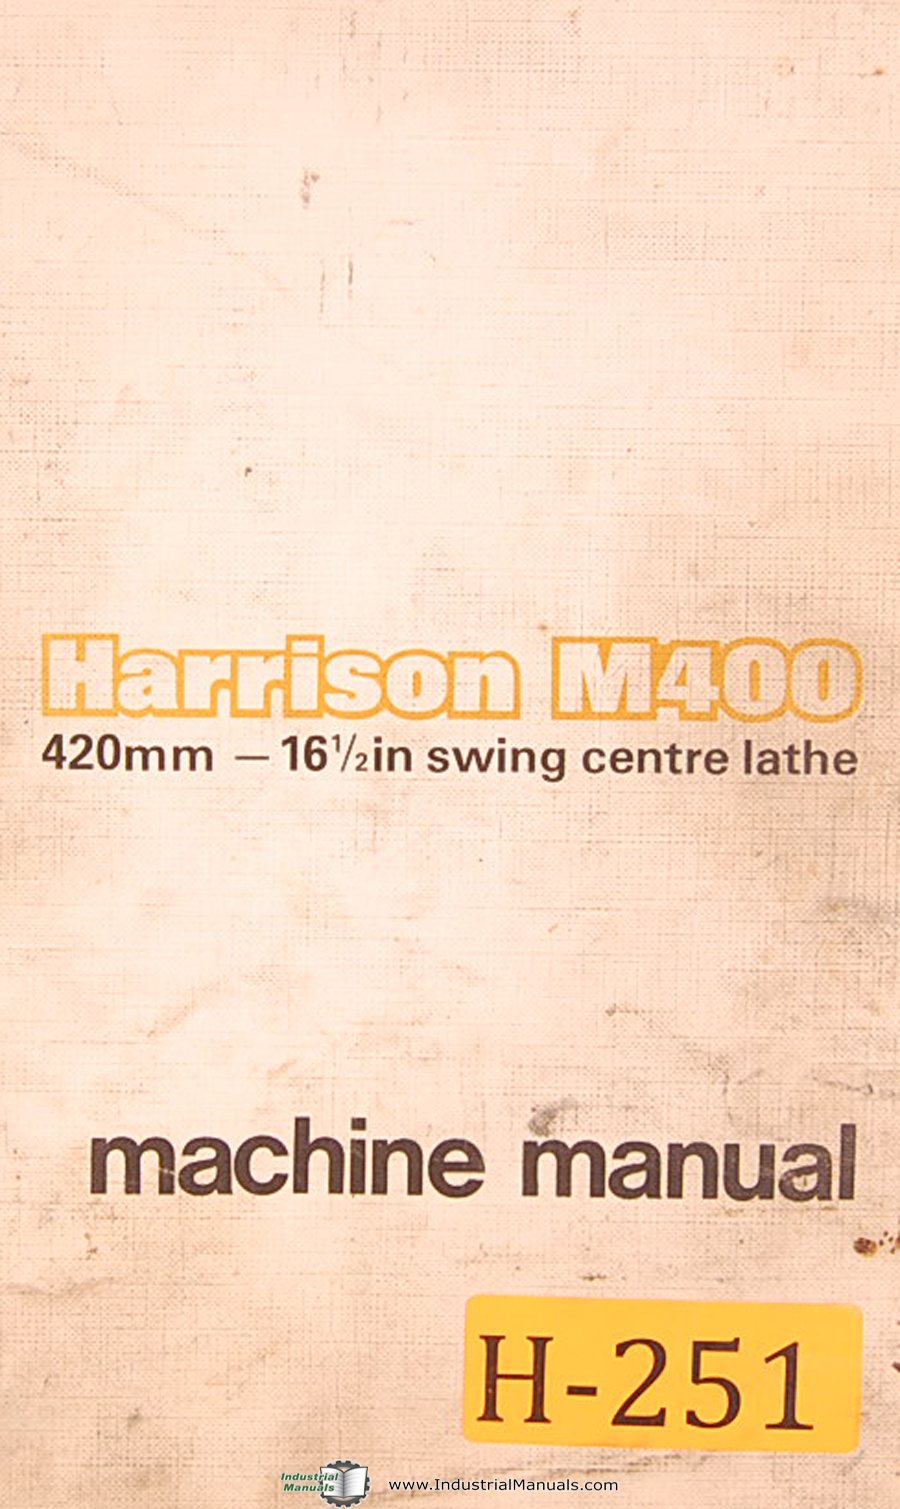 Harrison M400 Lathe Manual Pdf